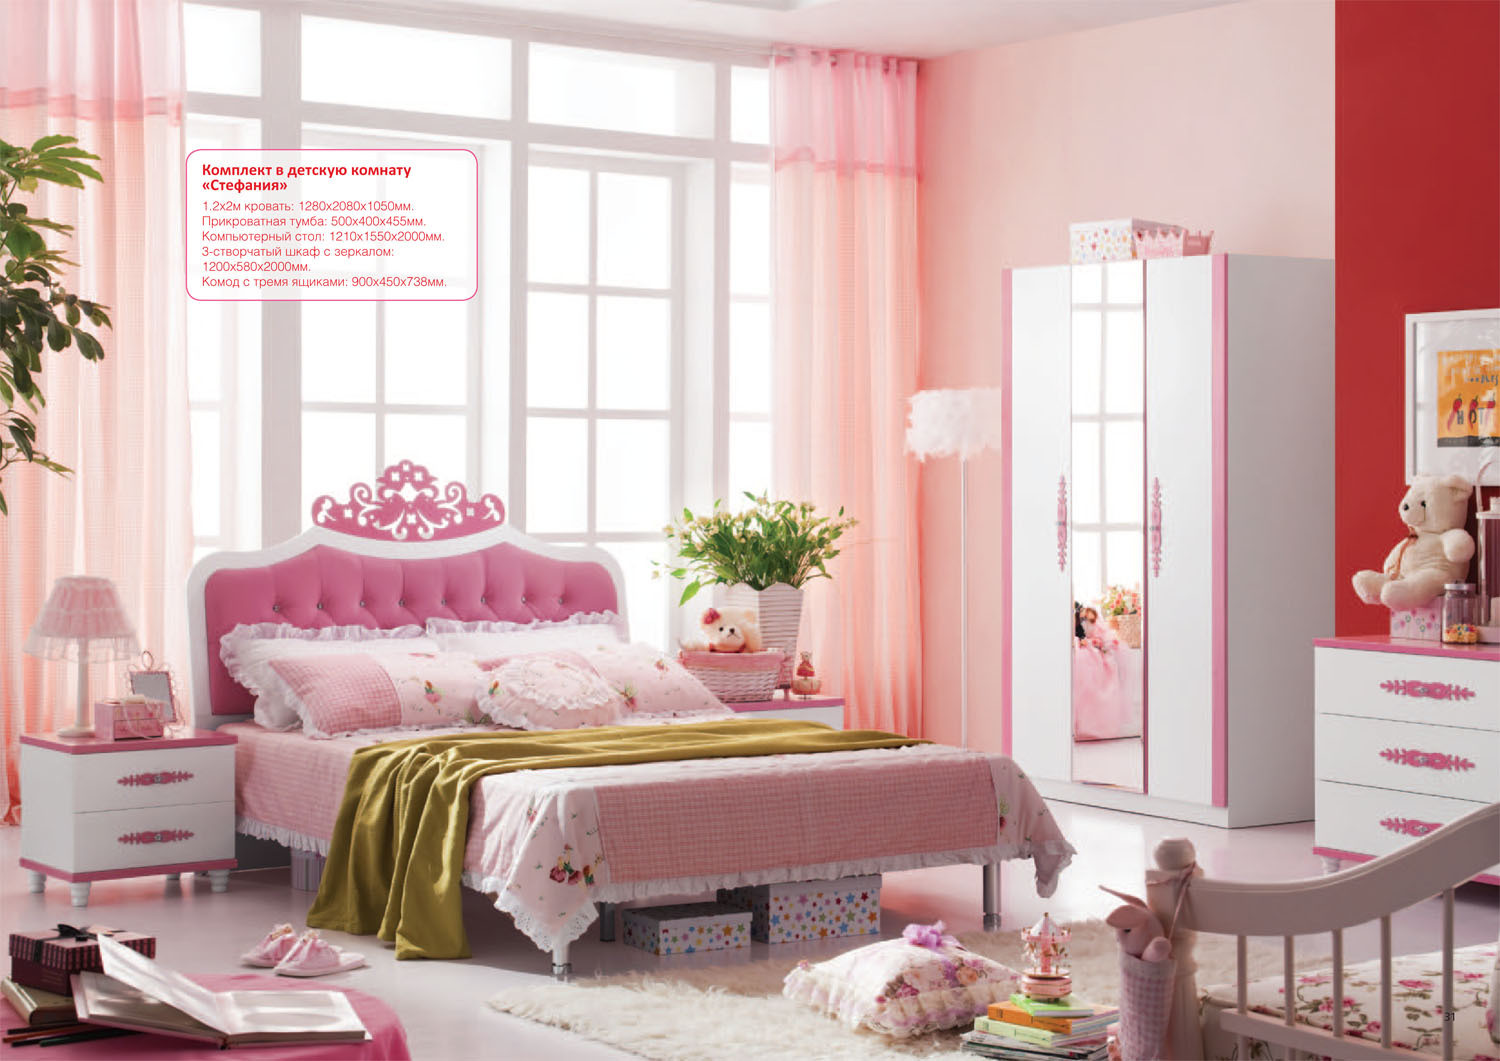 Детская мебель mosmirmebeli gmail com. Детские спальни для девочек. Детские комнаты для девочек. Розовая детская комната для девочки.